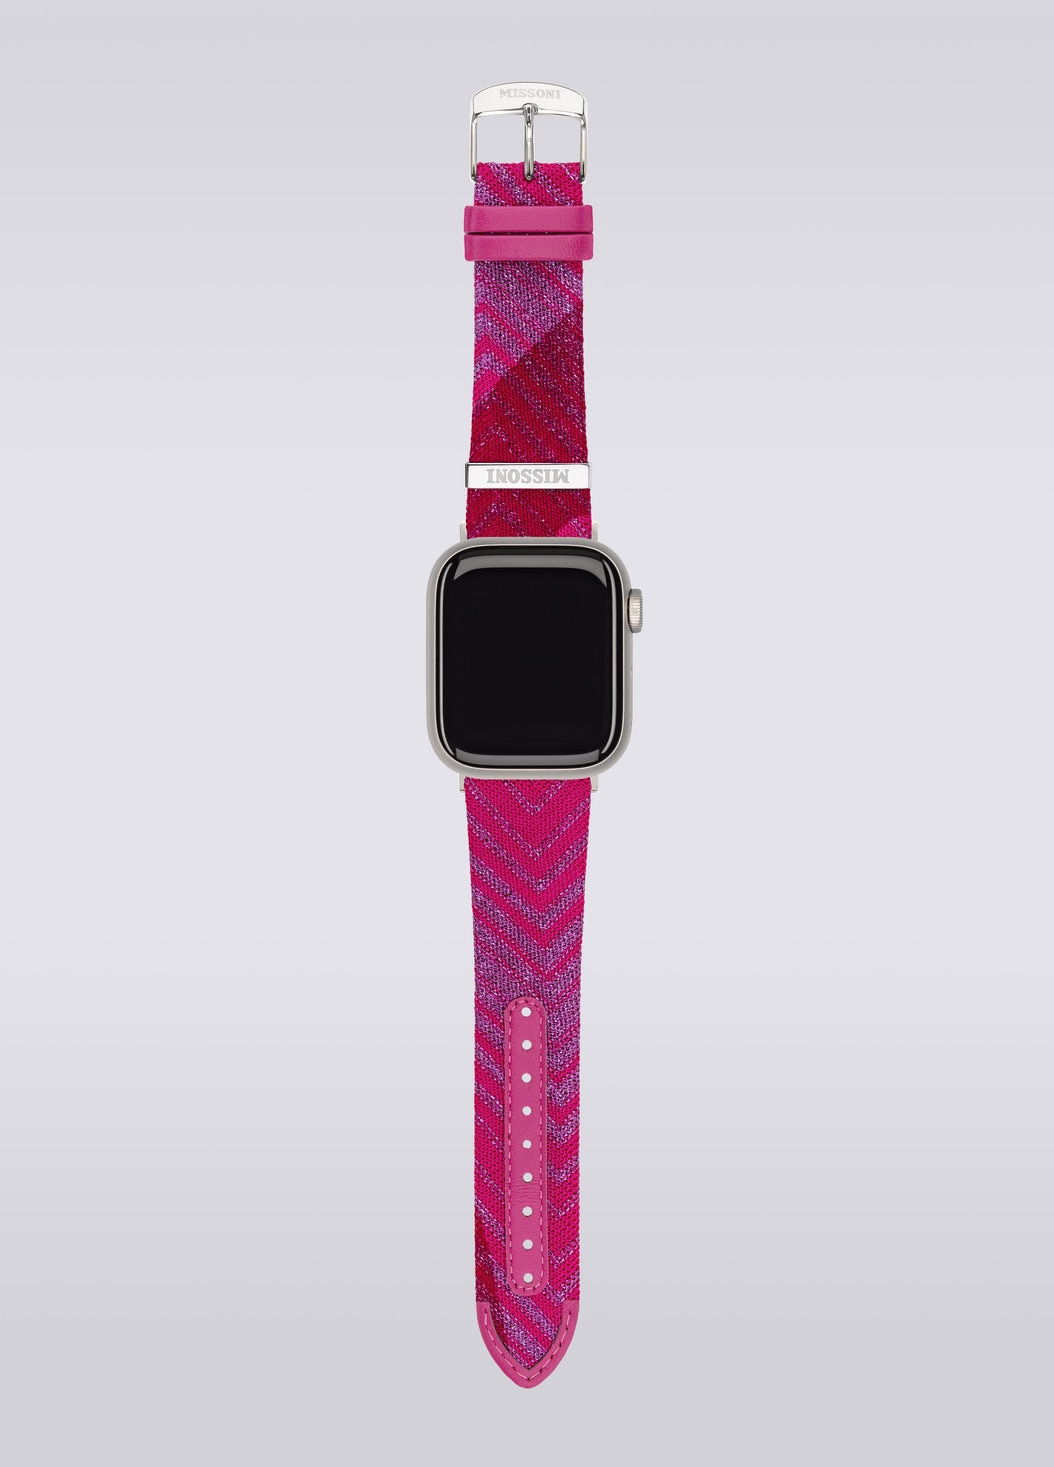 Missoniファブリック 22mm Apple watch対応ストラップ, ピンク   - 8053147046204 - 3